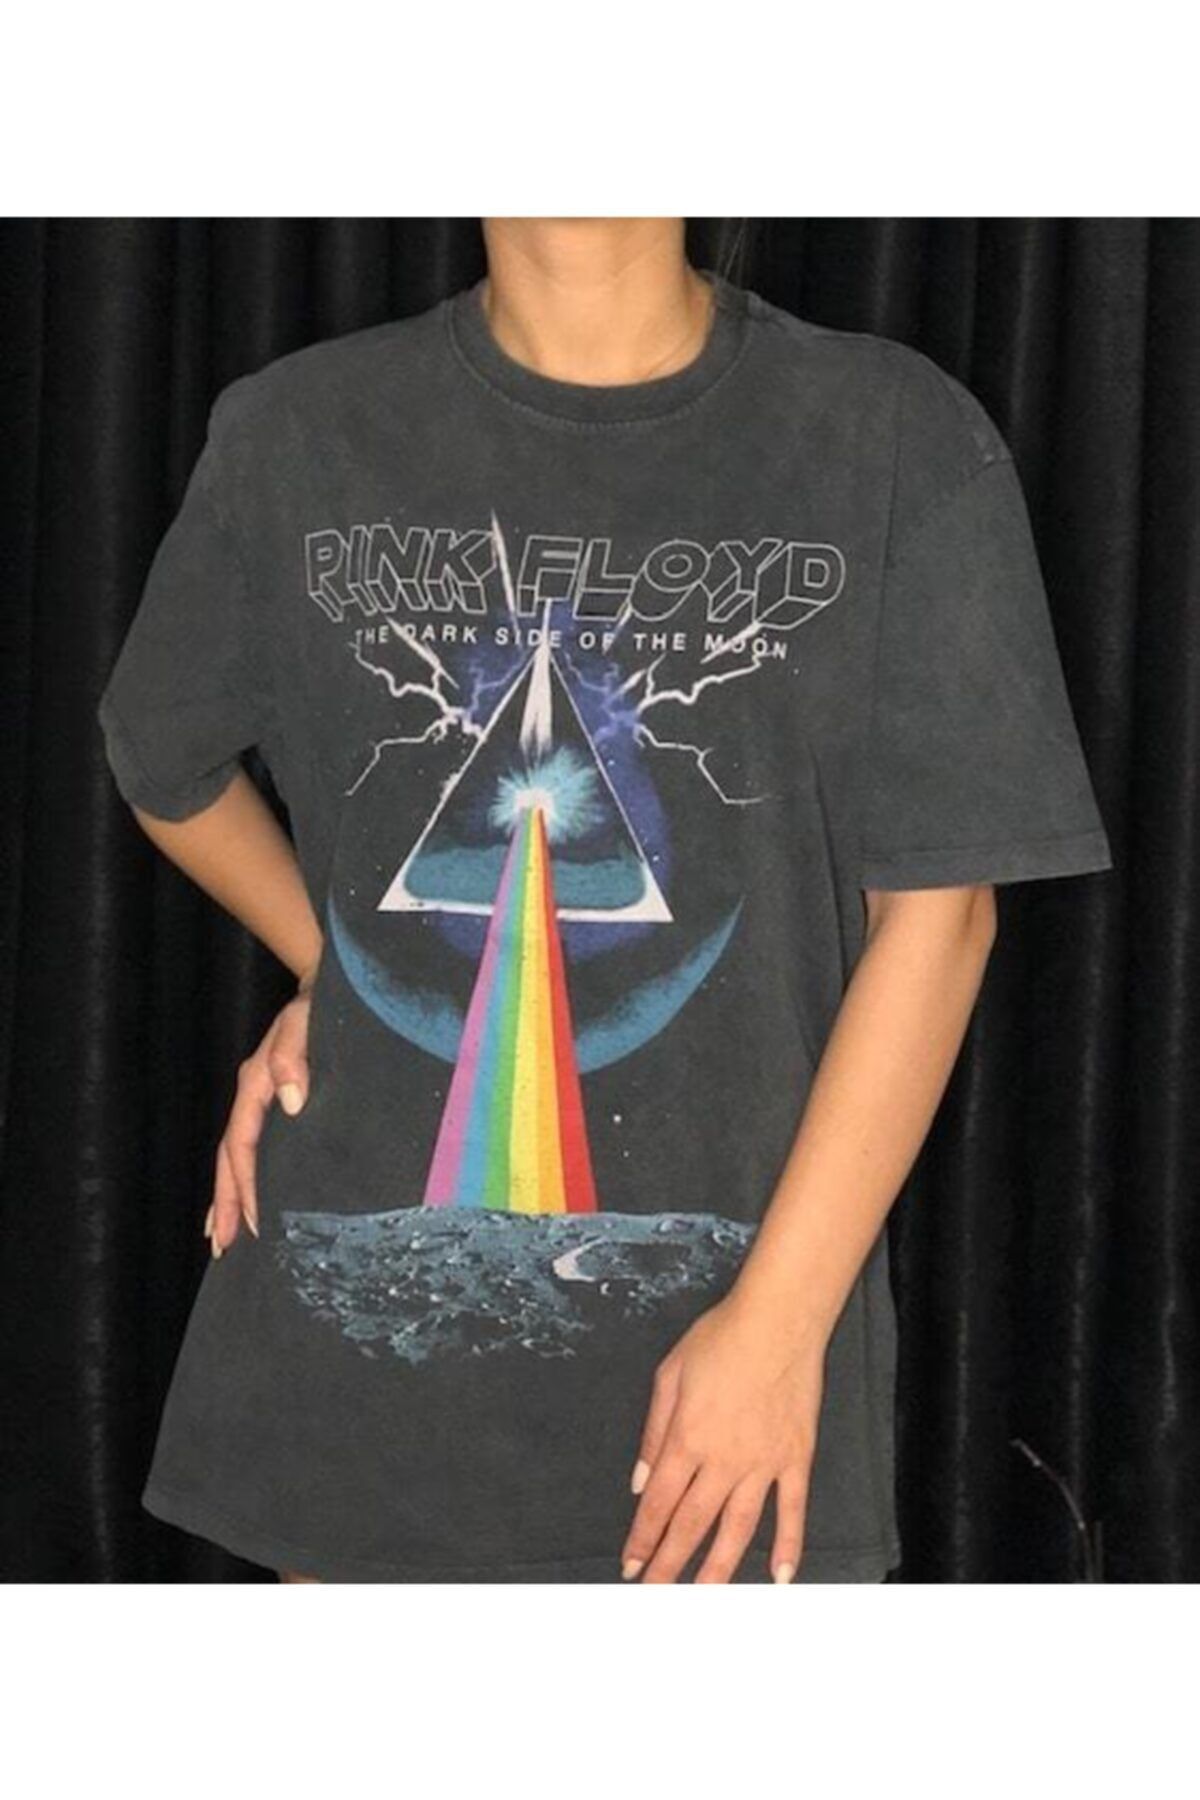 Byhelinates Pink Floyd Tshirt